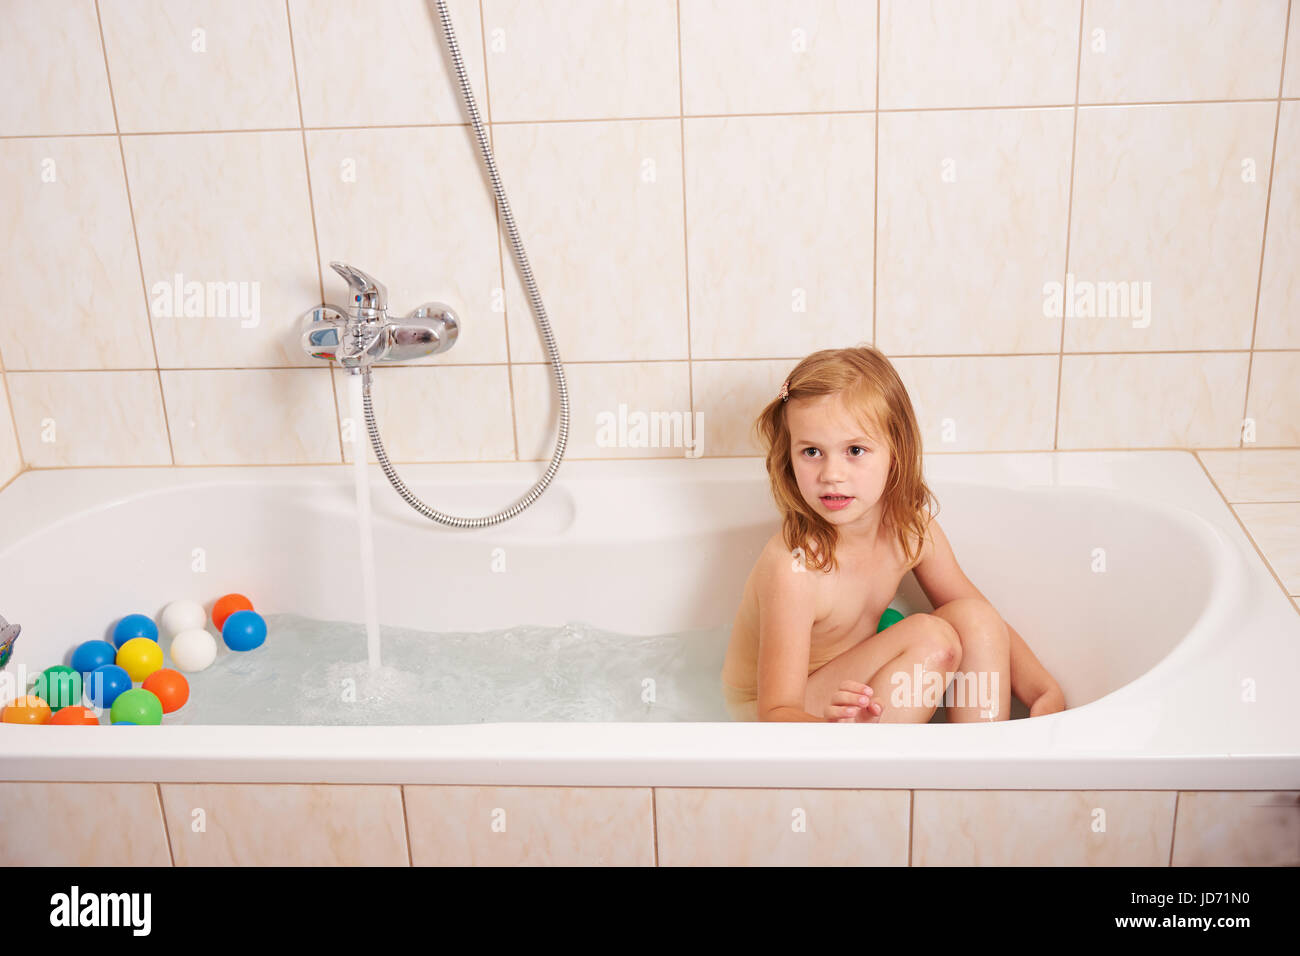 Ein kleines Mädchen in eine Badewanne mit farbigen Kugeln spielen Stockfoto